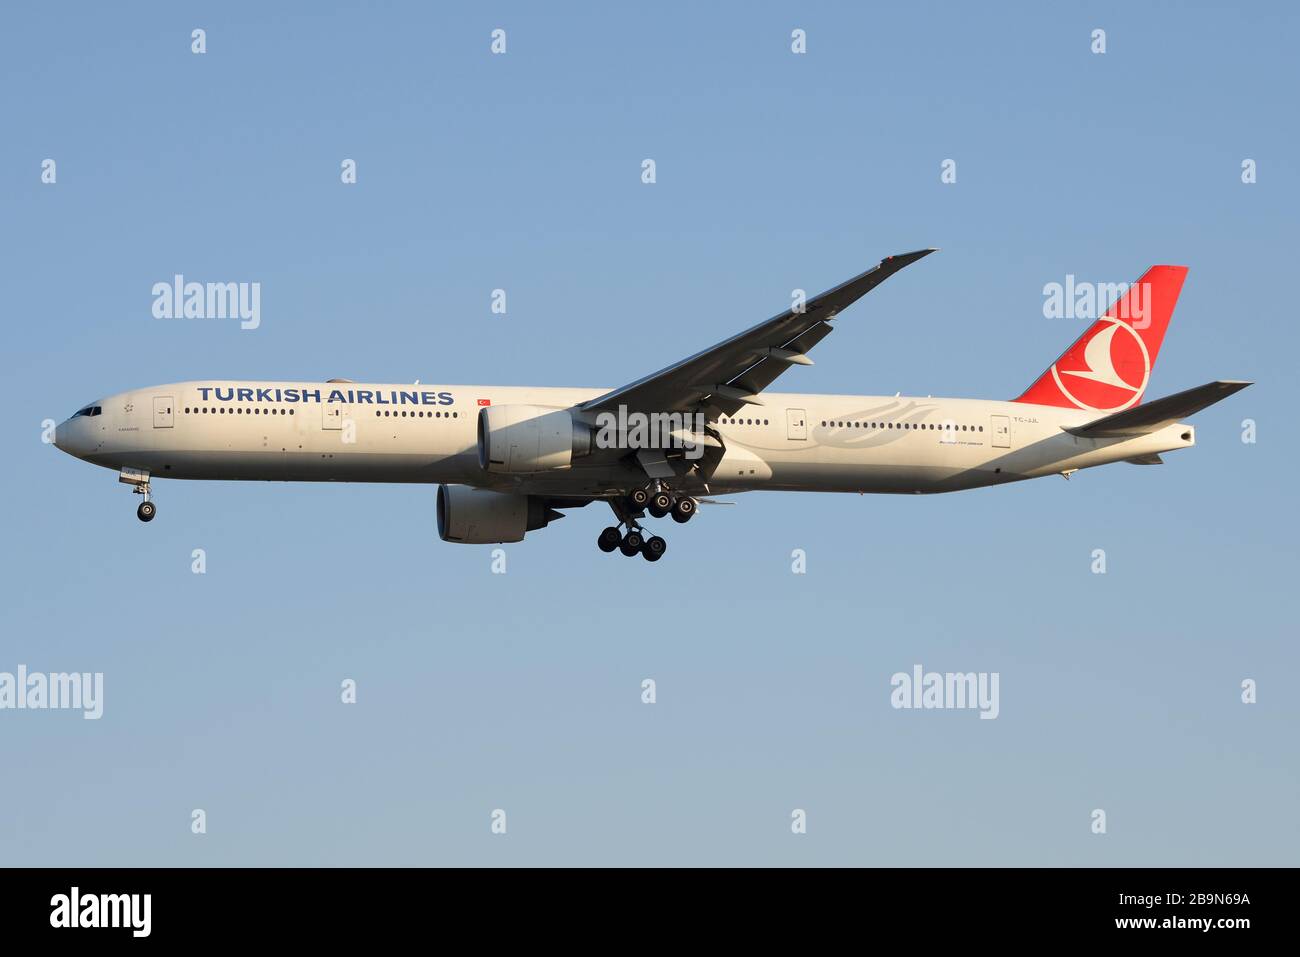 Turkish Airlines Boeing 777 über die endgültige Annäherung an den Flughafen Sao Paulo Guarulhos in Brasilien von Istanbul aus. B777 als TC-JJL registriert. Stockfoto